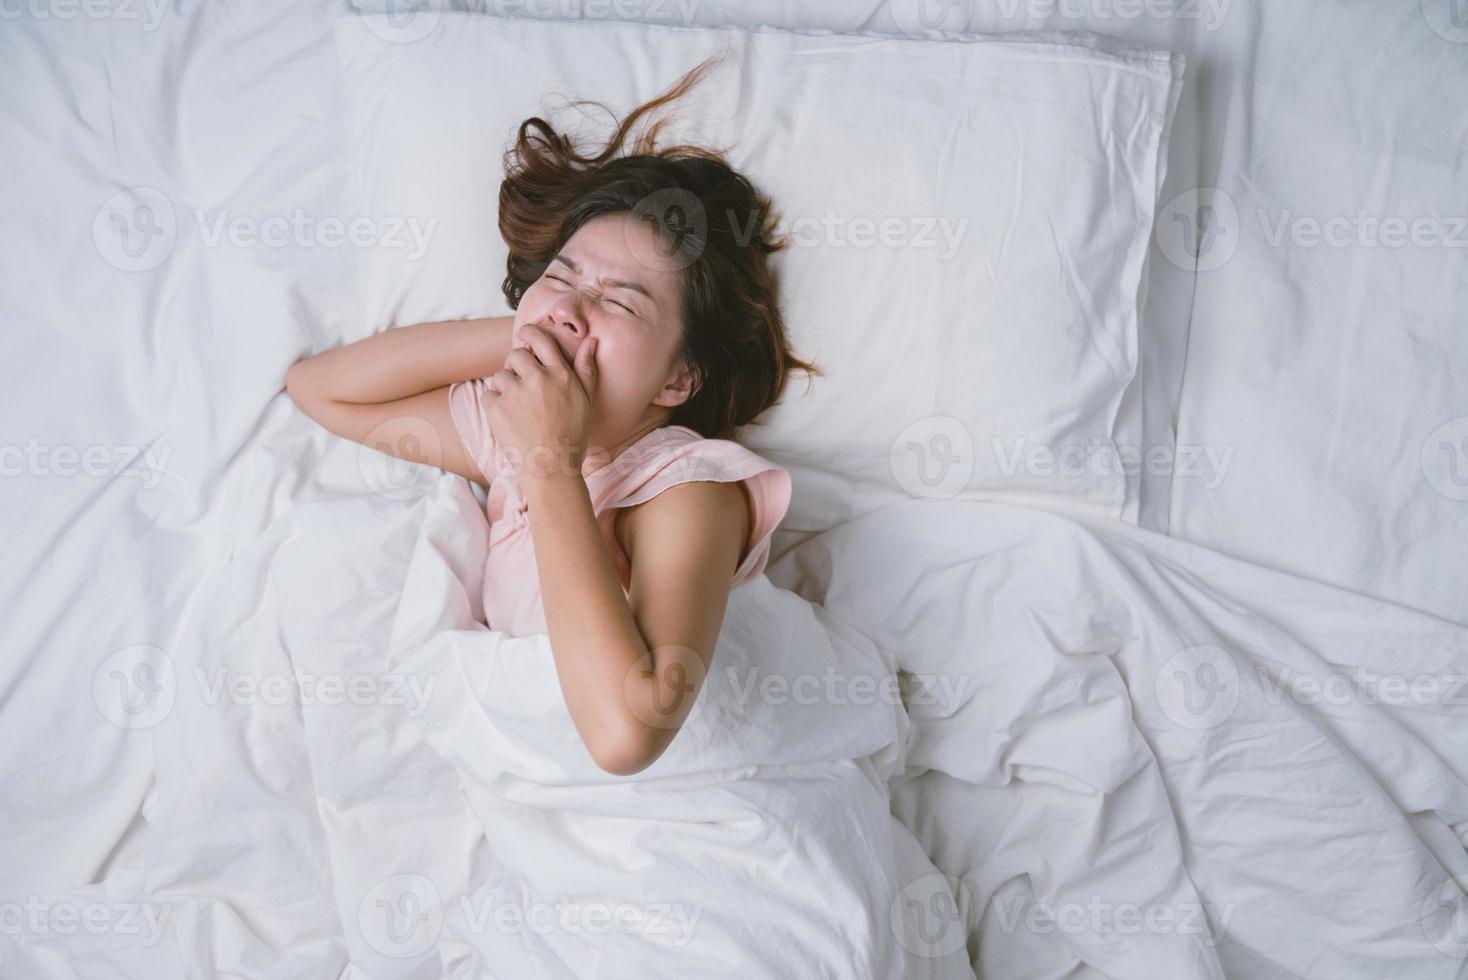 jonge vrouw slaapt goed in bed en knuffelt zacht wit kussen. tienermeisje rusten. goede nachtrust concept. meisje dat een pyjama draagt, slaapt 's ochtends op een bed in een witte kamer. warme toon. foto